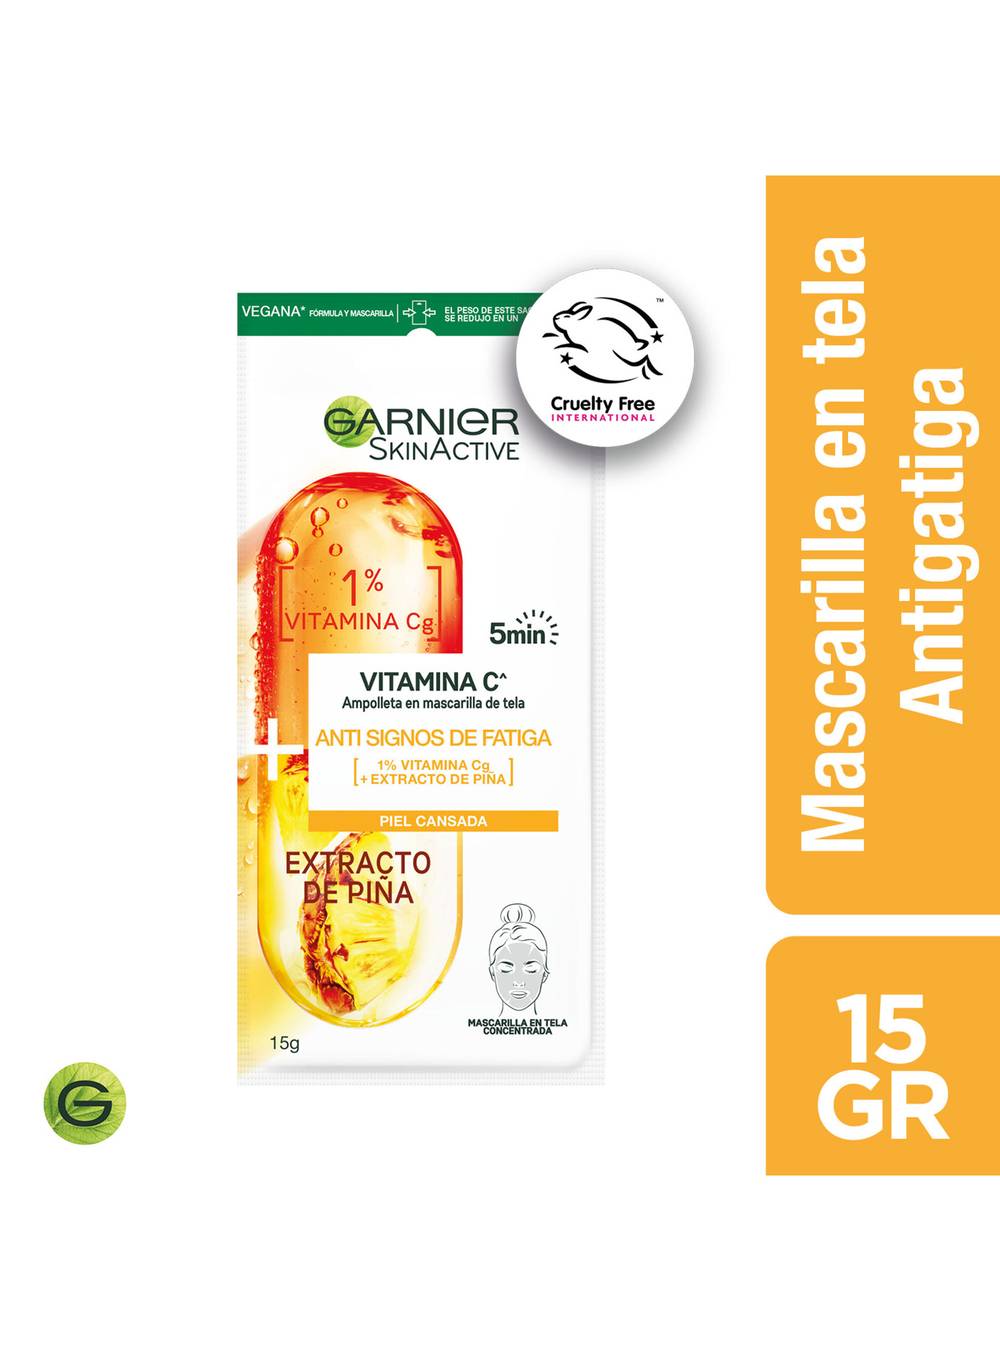 Garnier skin active mascarilla en tela ampolla piña antifatiga (sobre 15 g)